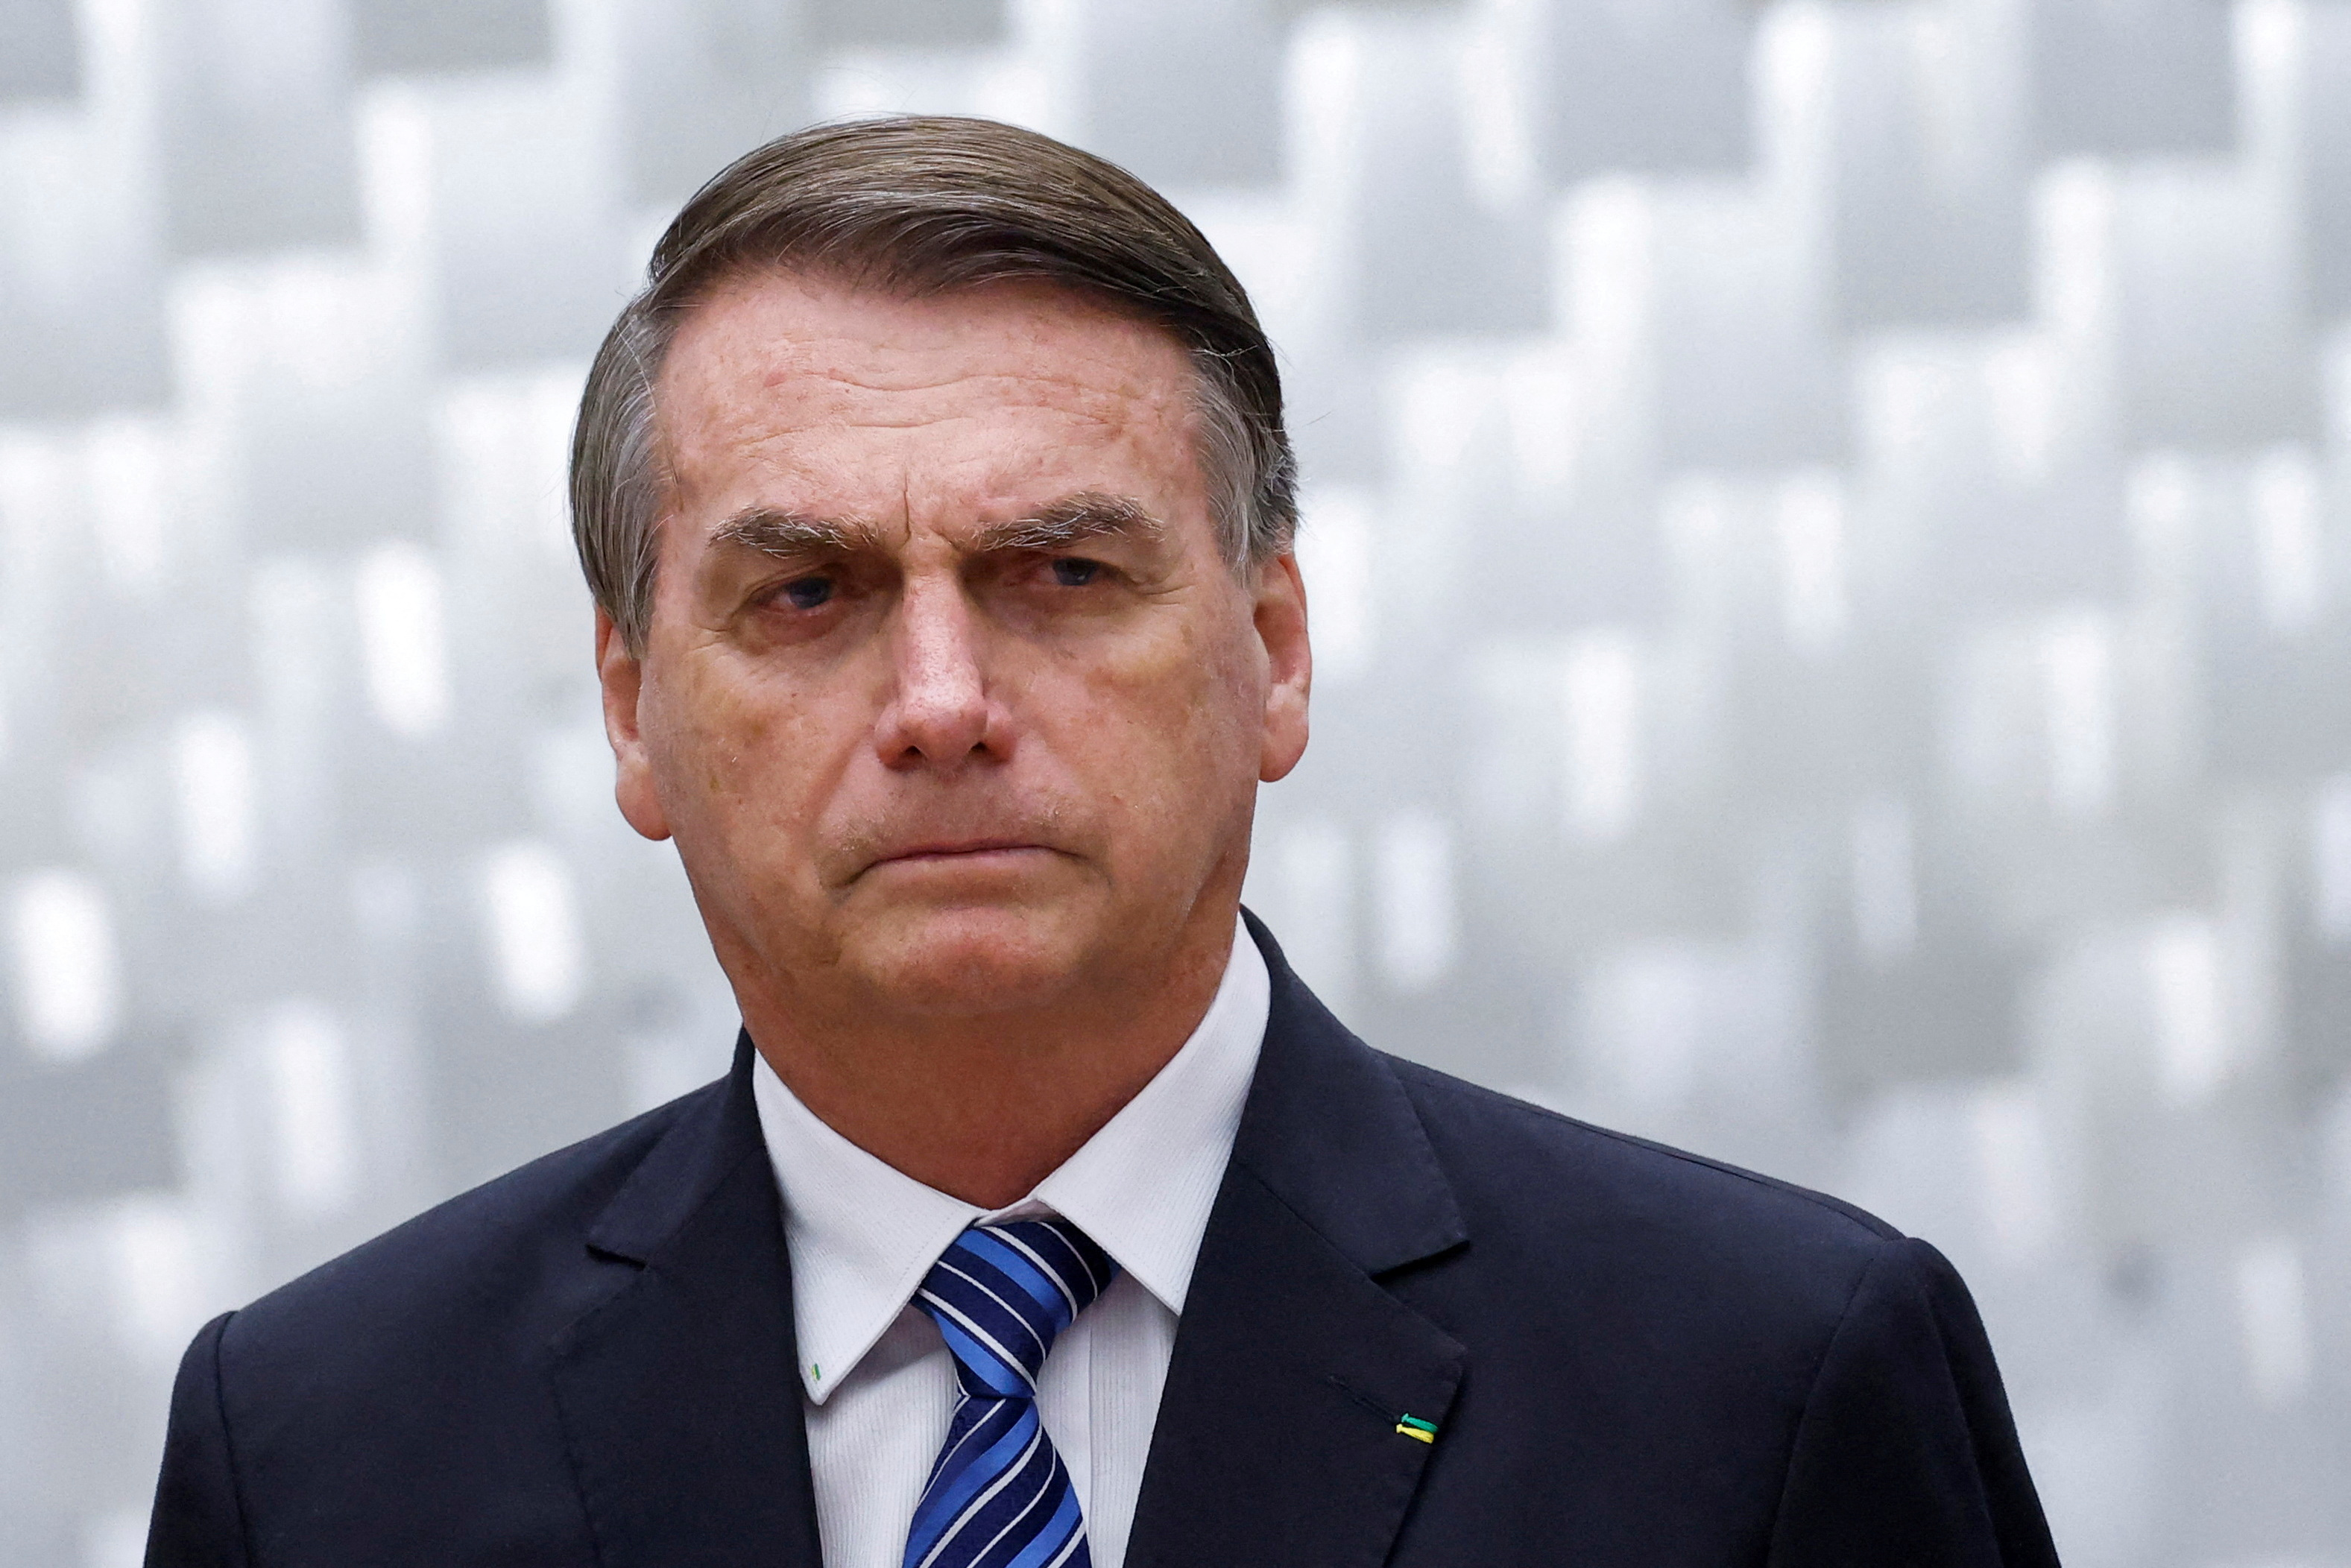 Bolsonaro asegura que lo acusan sin pruebas tras ataques contra instituciones del Estado en Brasilia